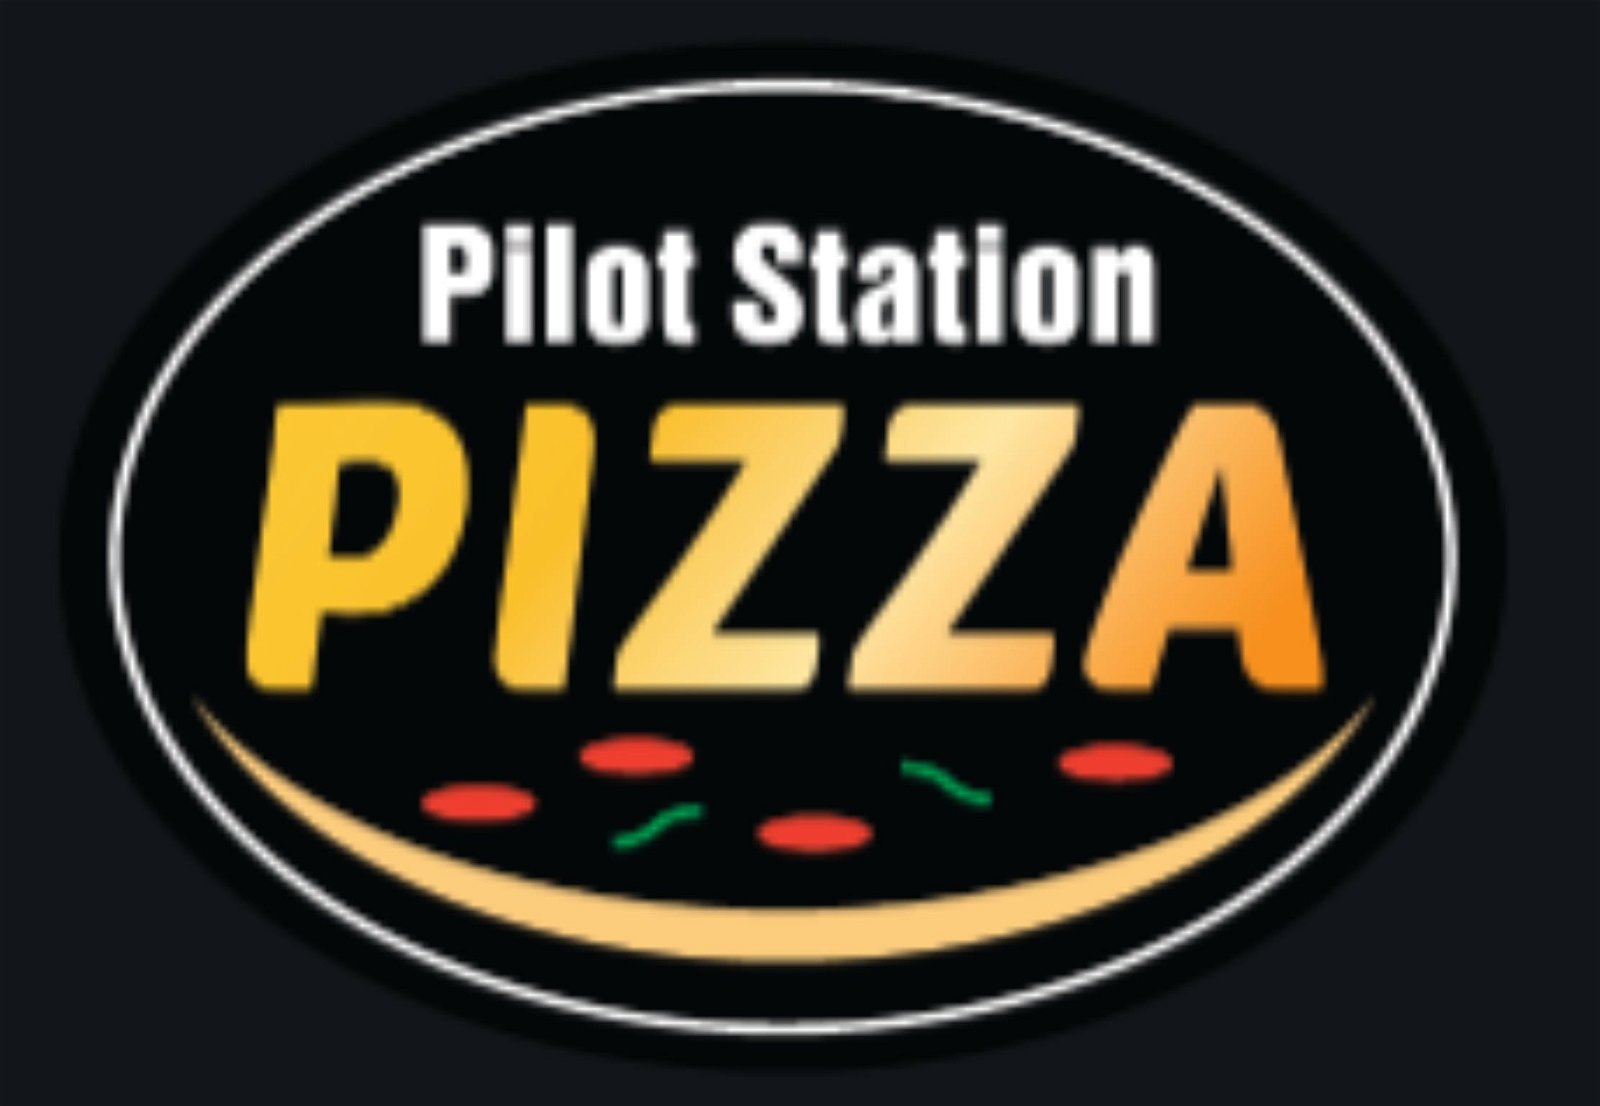 Pilot Station Pizza - Australia Accommodation